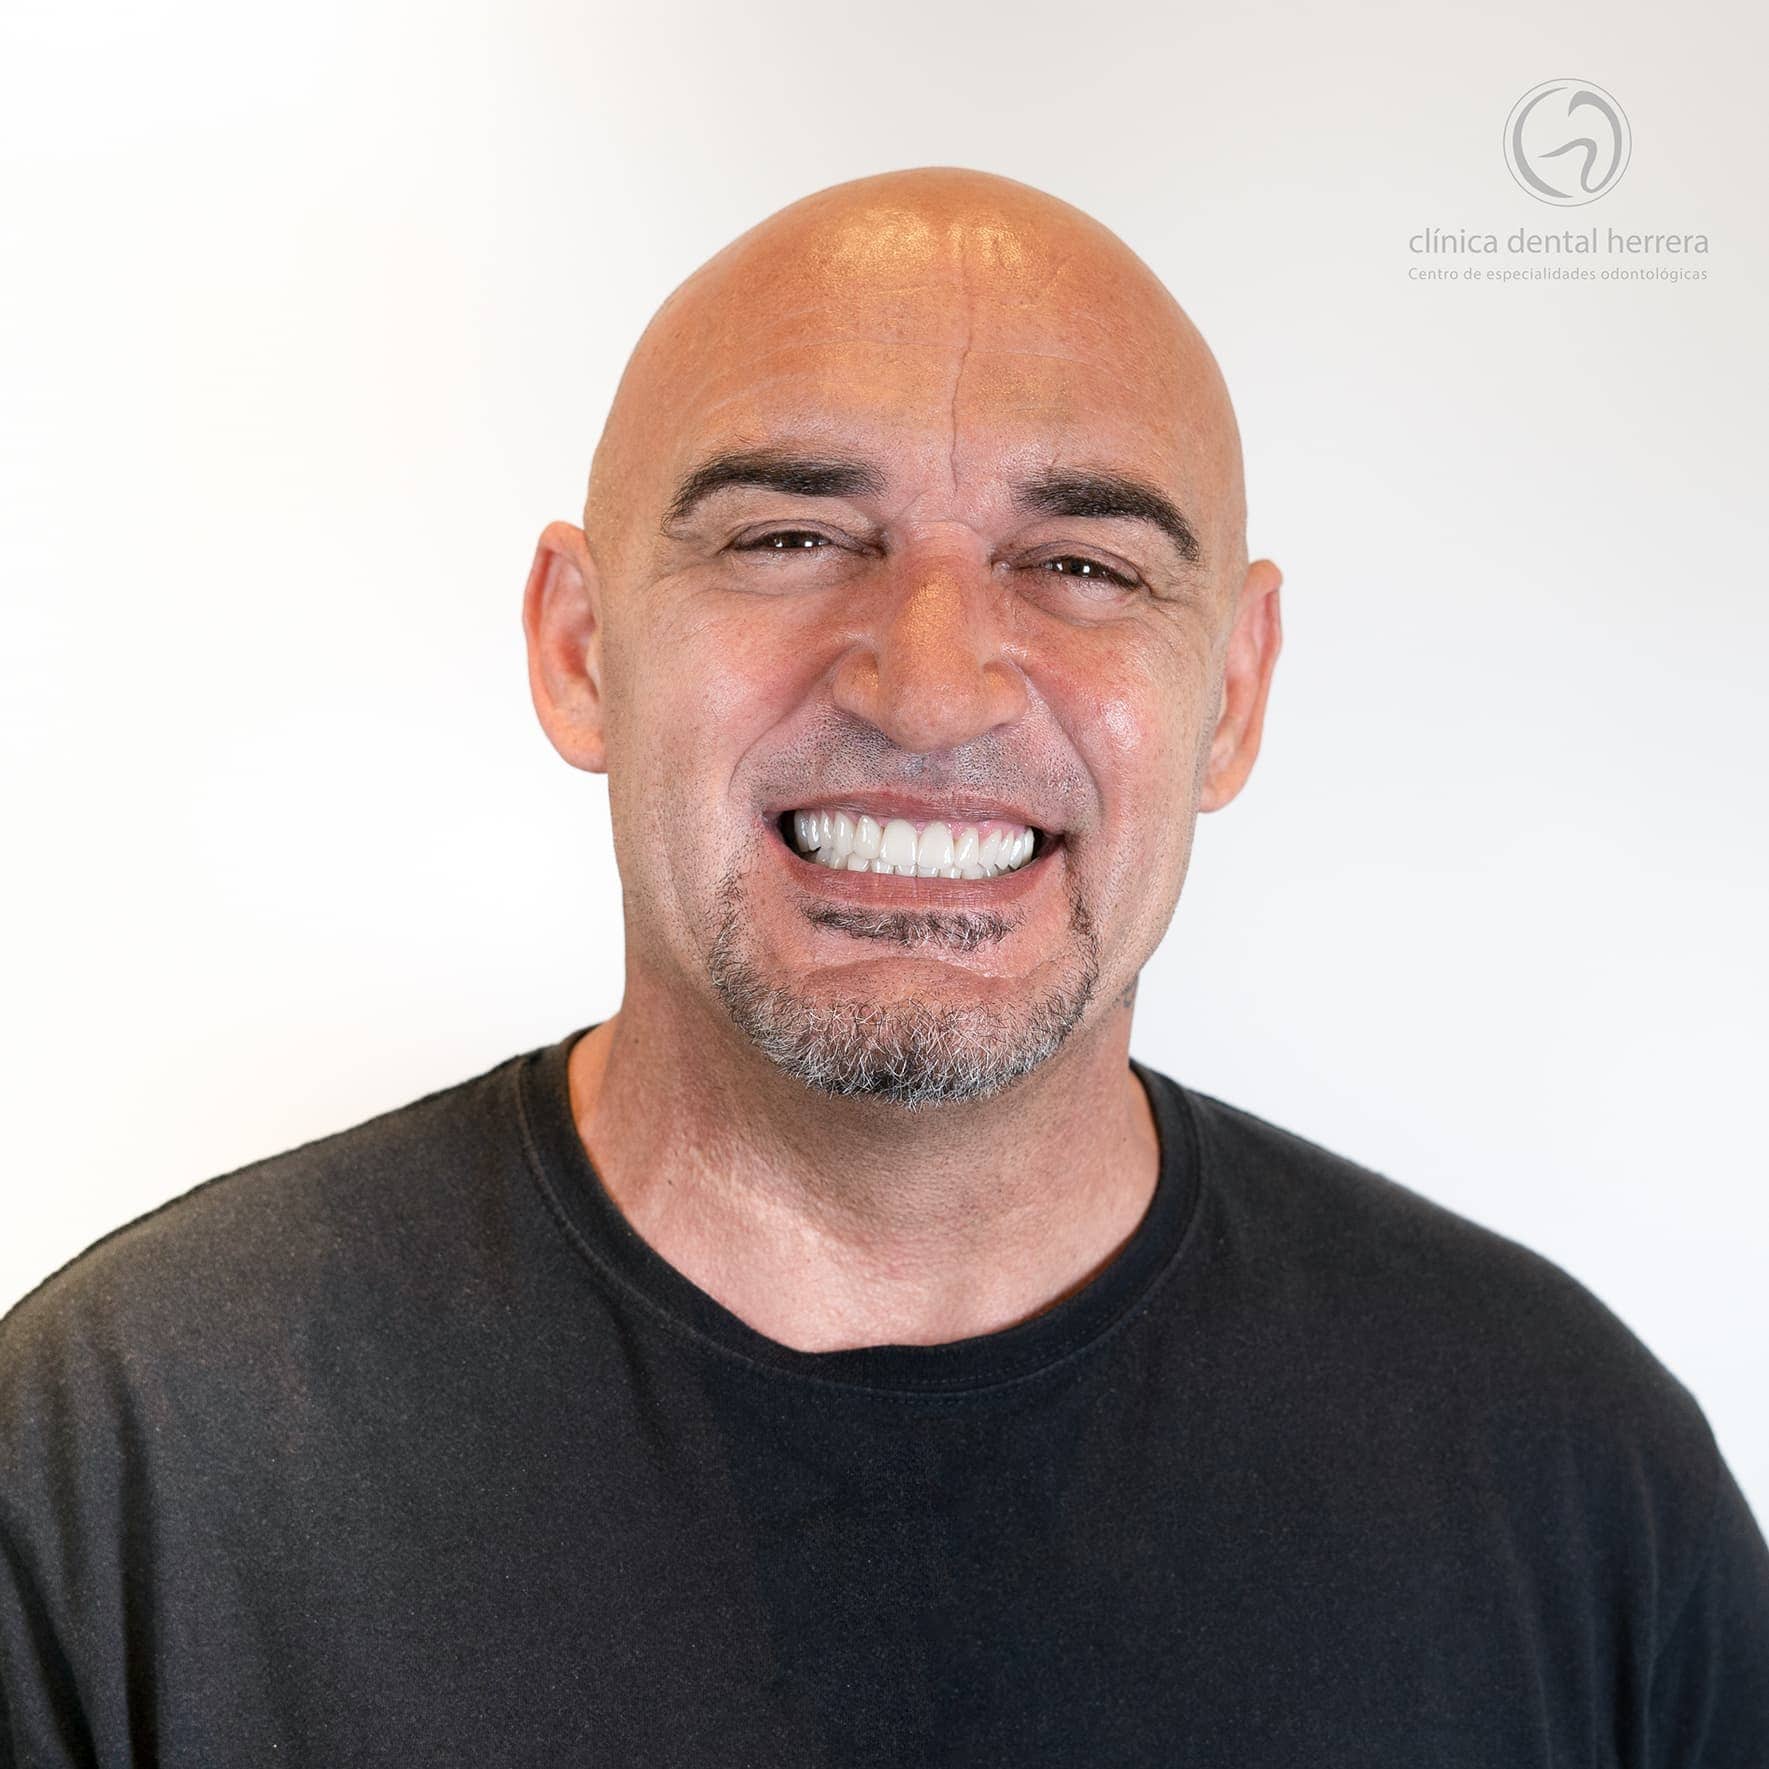 Miguel Ángel Salido. Facettes dentaires. Digital Smile Design 4